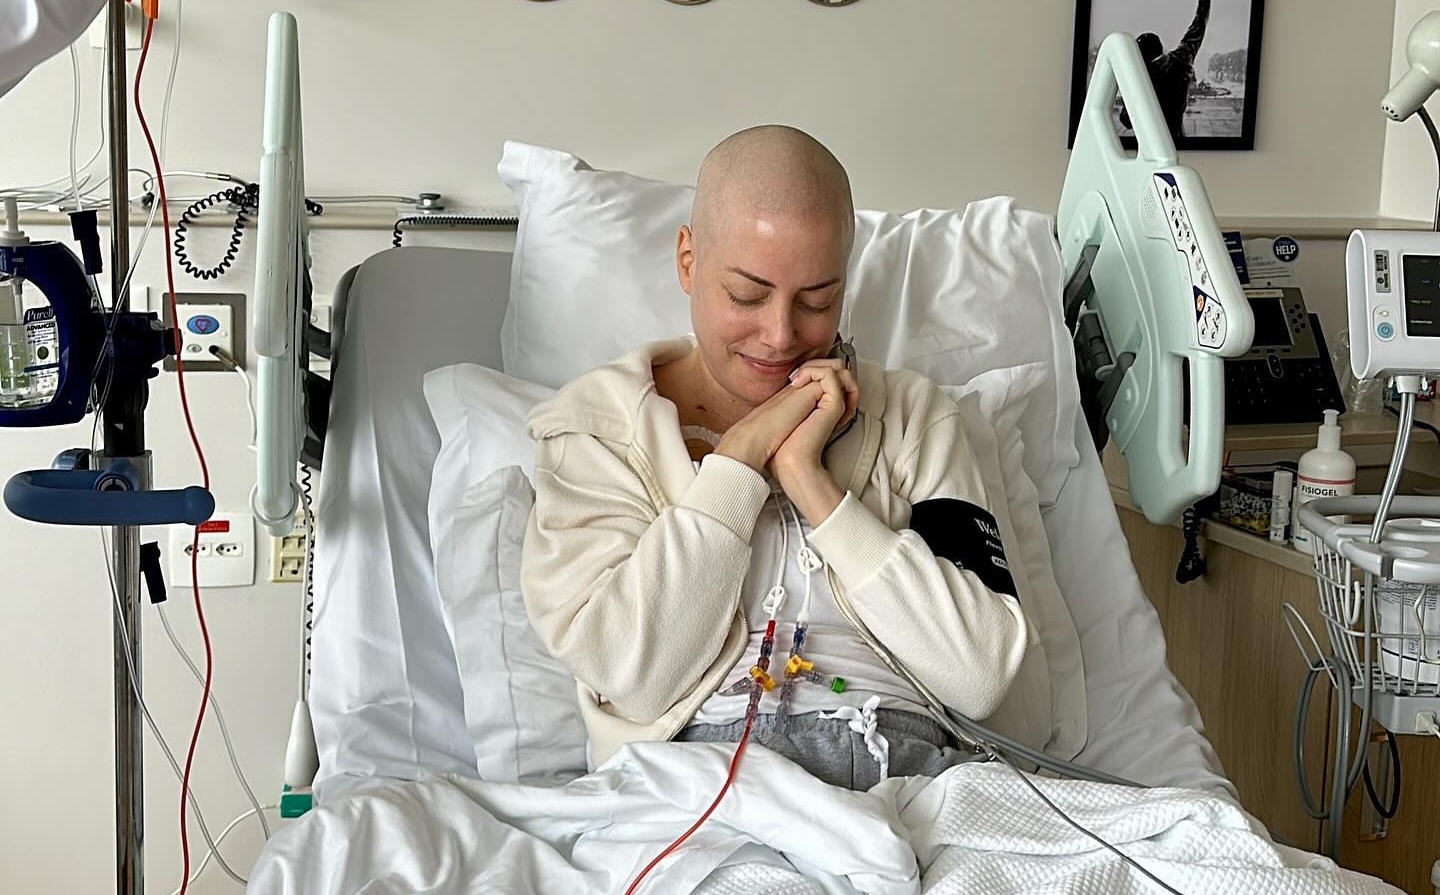 Influenciadora agradeceu a um doador anônimo pela medula óssea, descrevendo o gesto como uma segunda chance de vida após ser diagnosticada com leucemia mieloide aguda